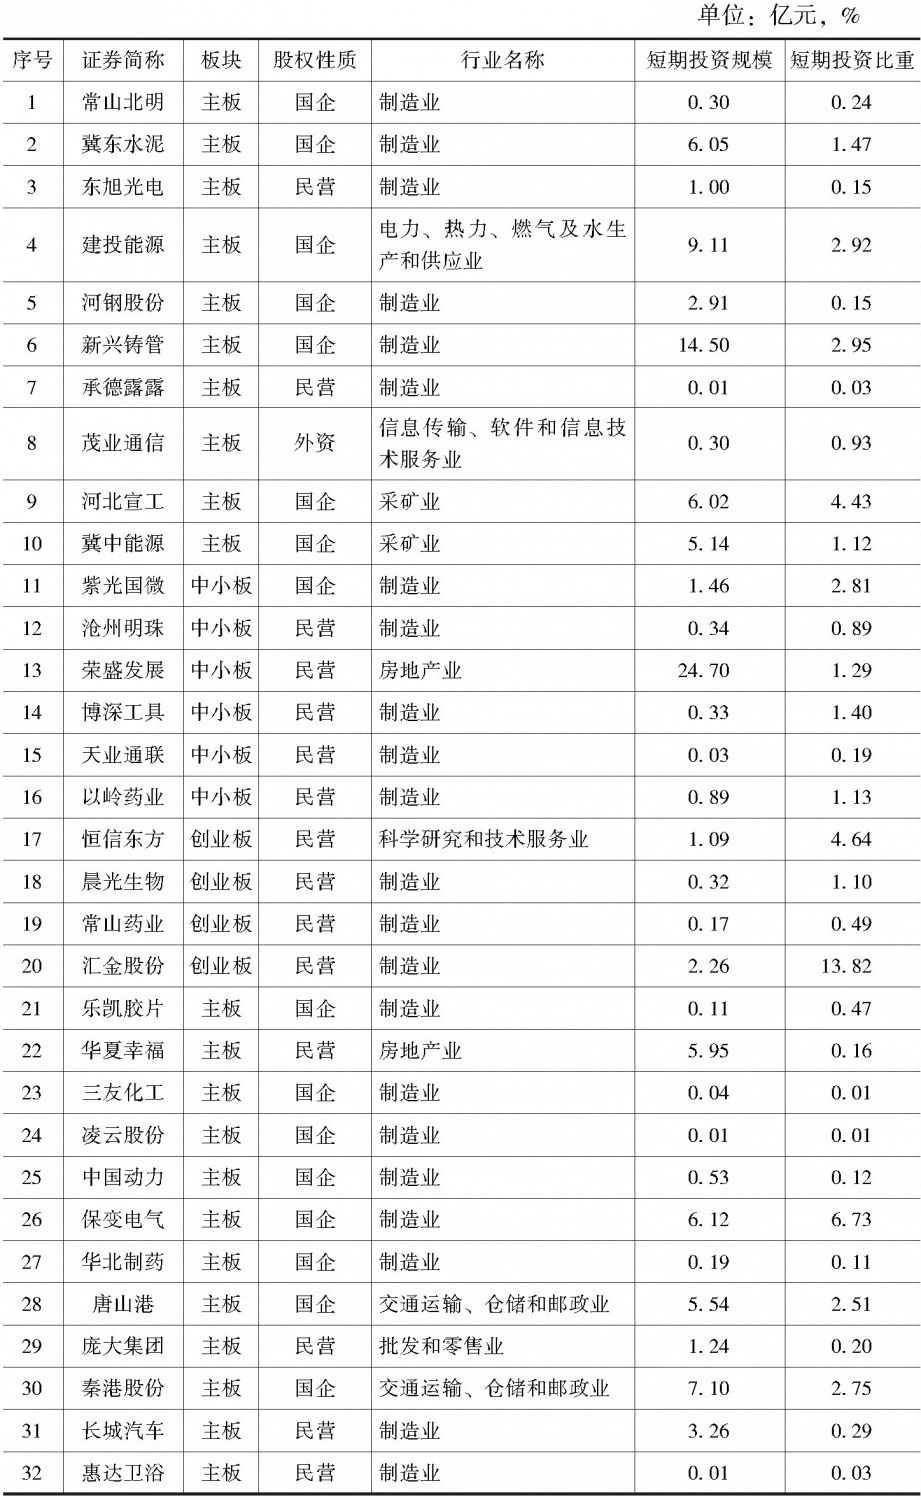 表2-20 2017年河北省持有短期投资上市公司